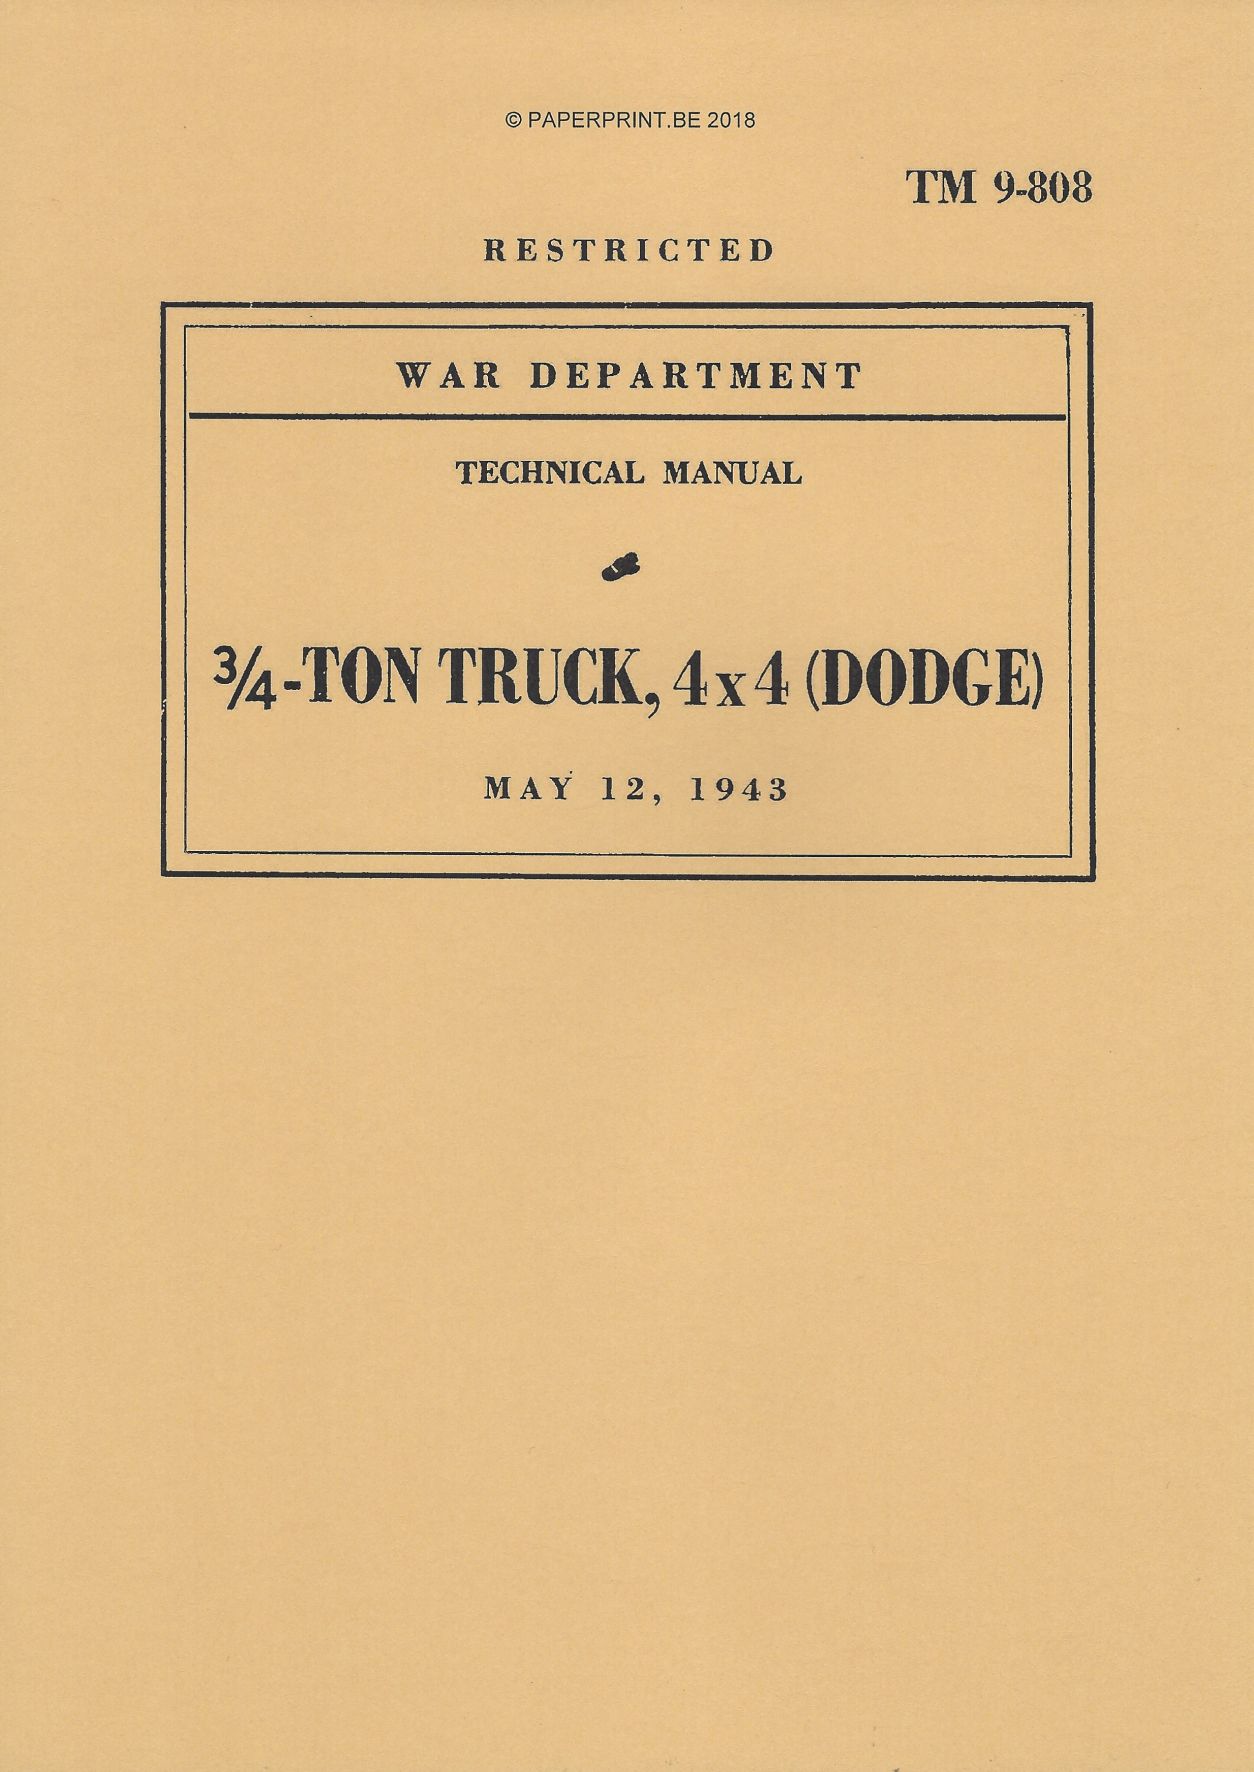 TM 9-808 1943 US TRUCK, ¾ TON 4x4 (DODGE)